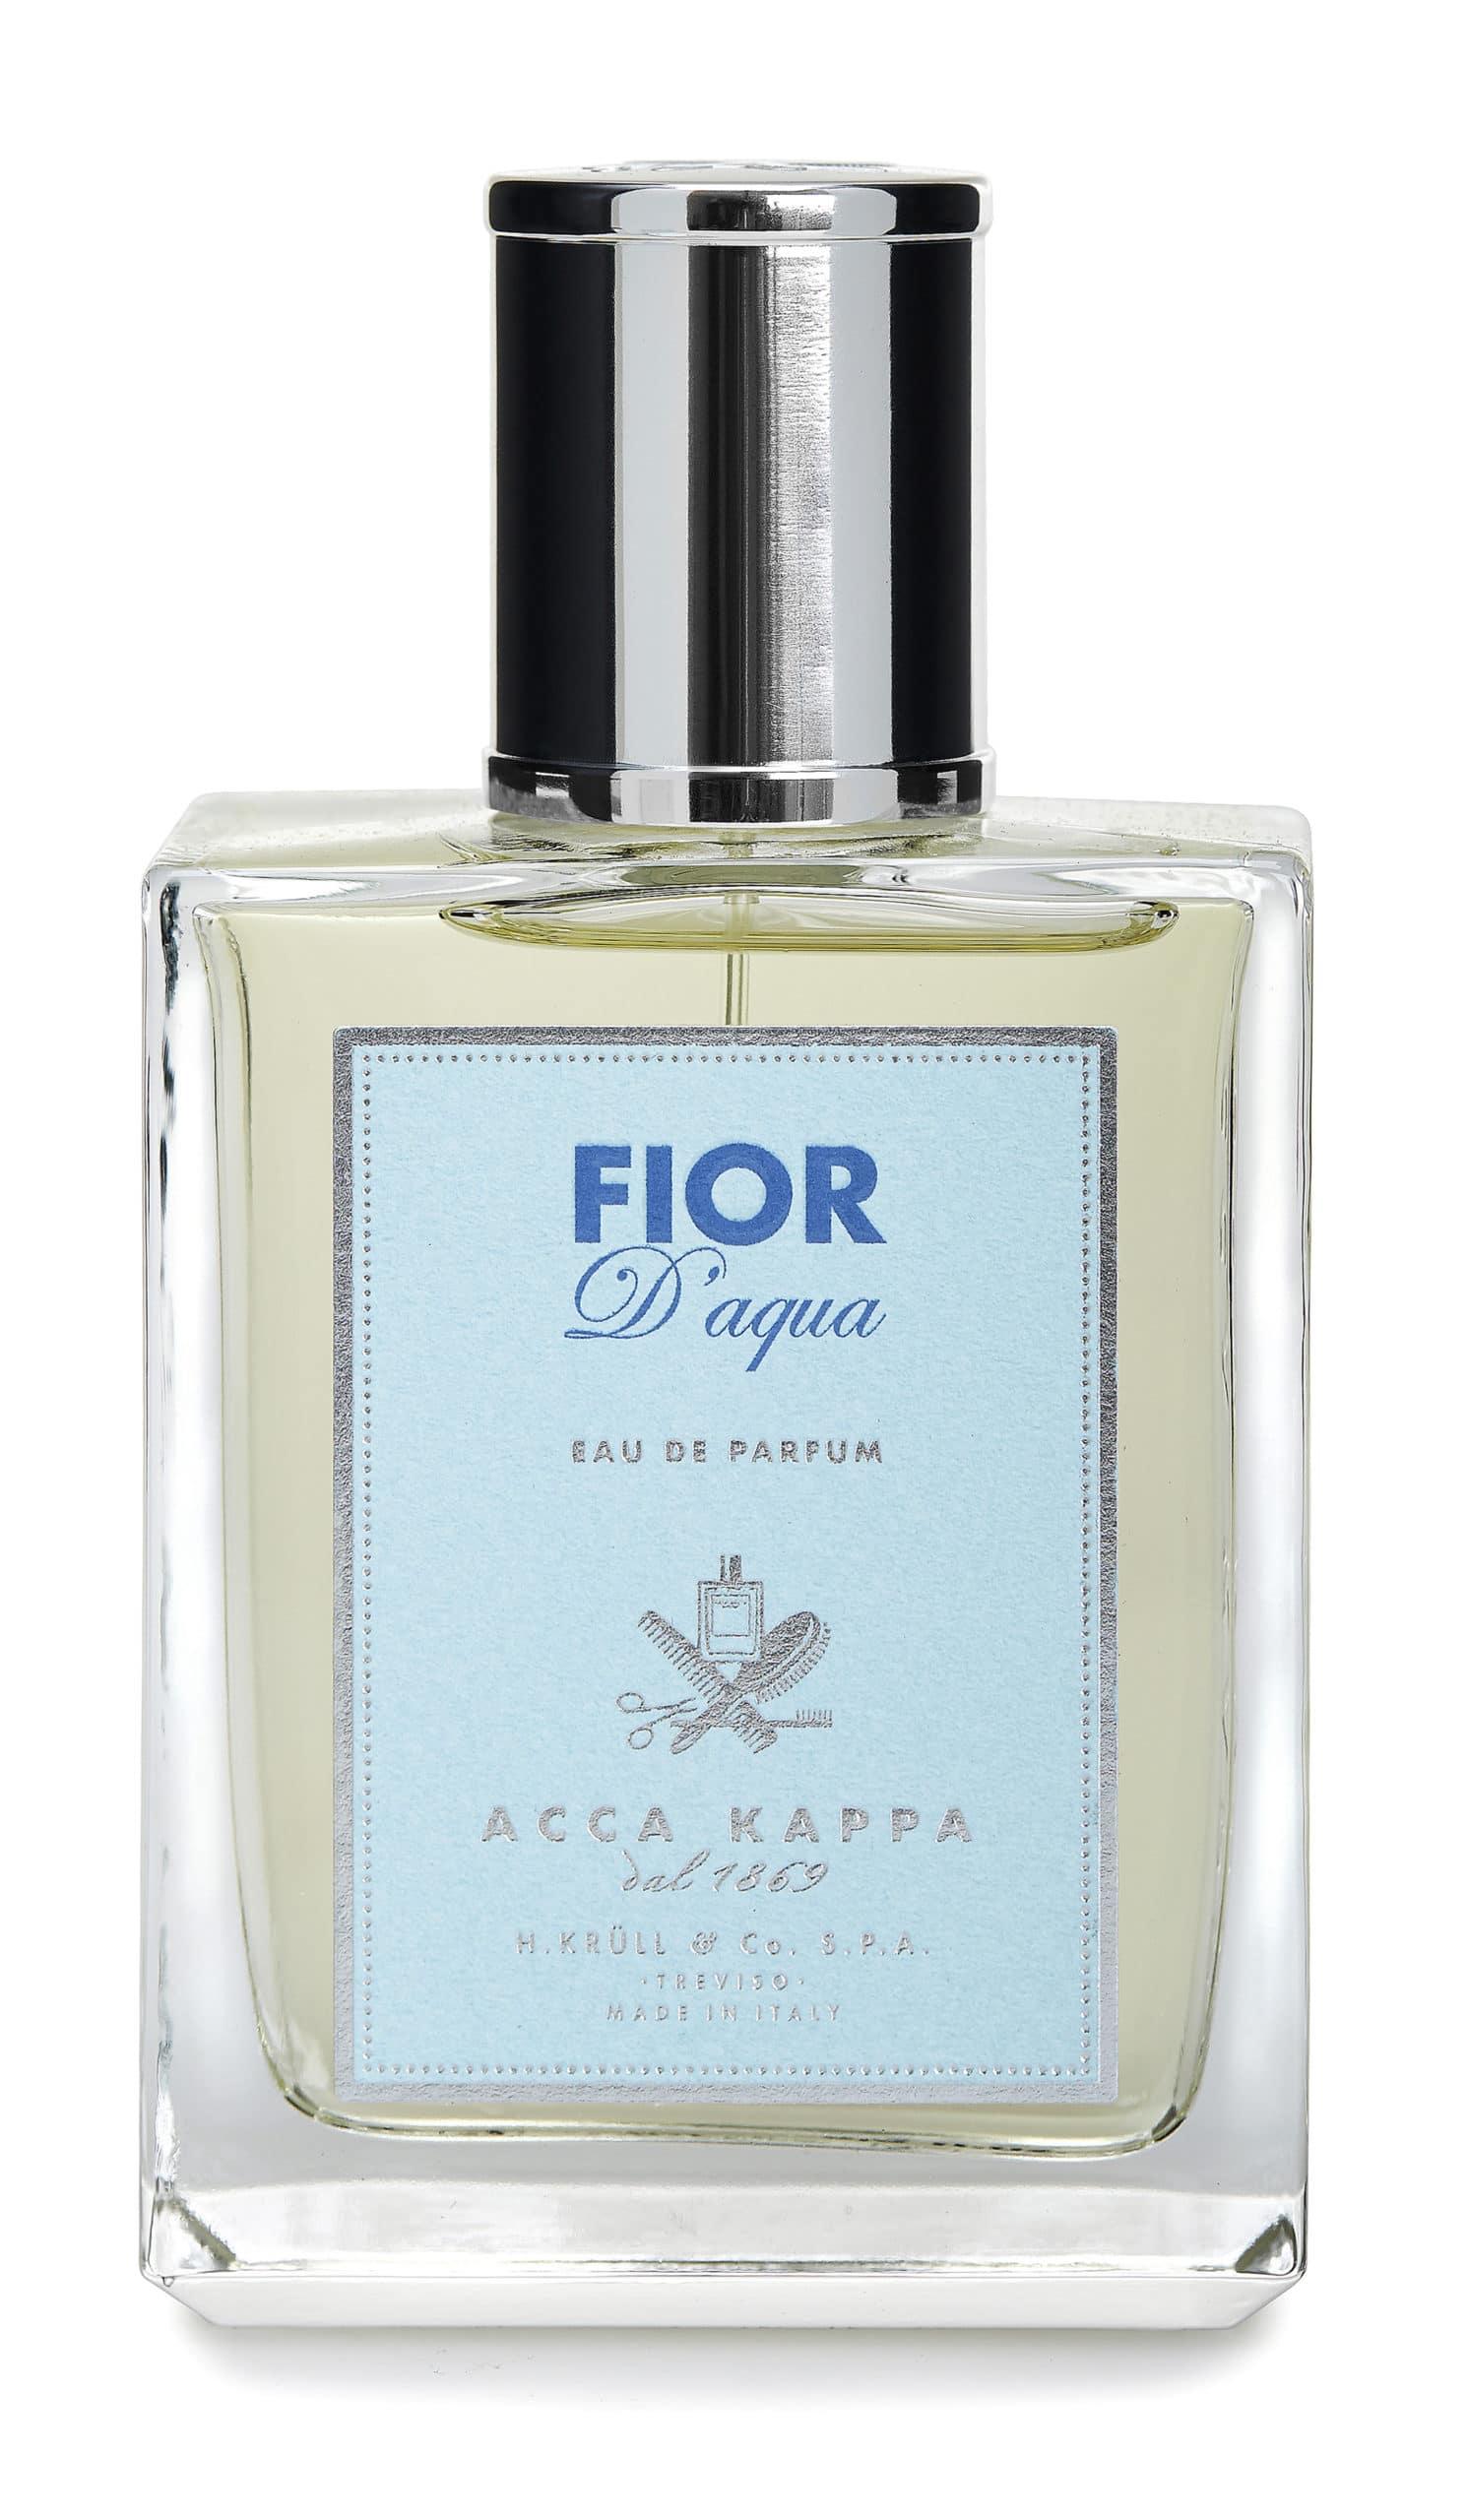 ACCA KAPPA Ženski parfem Fior d’aqua 100ml